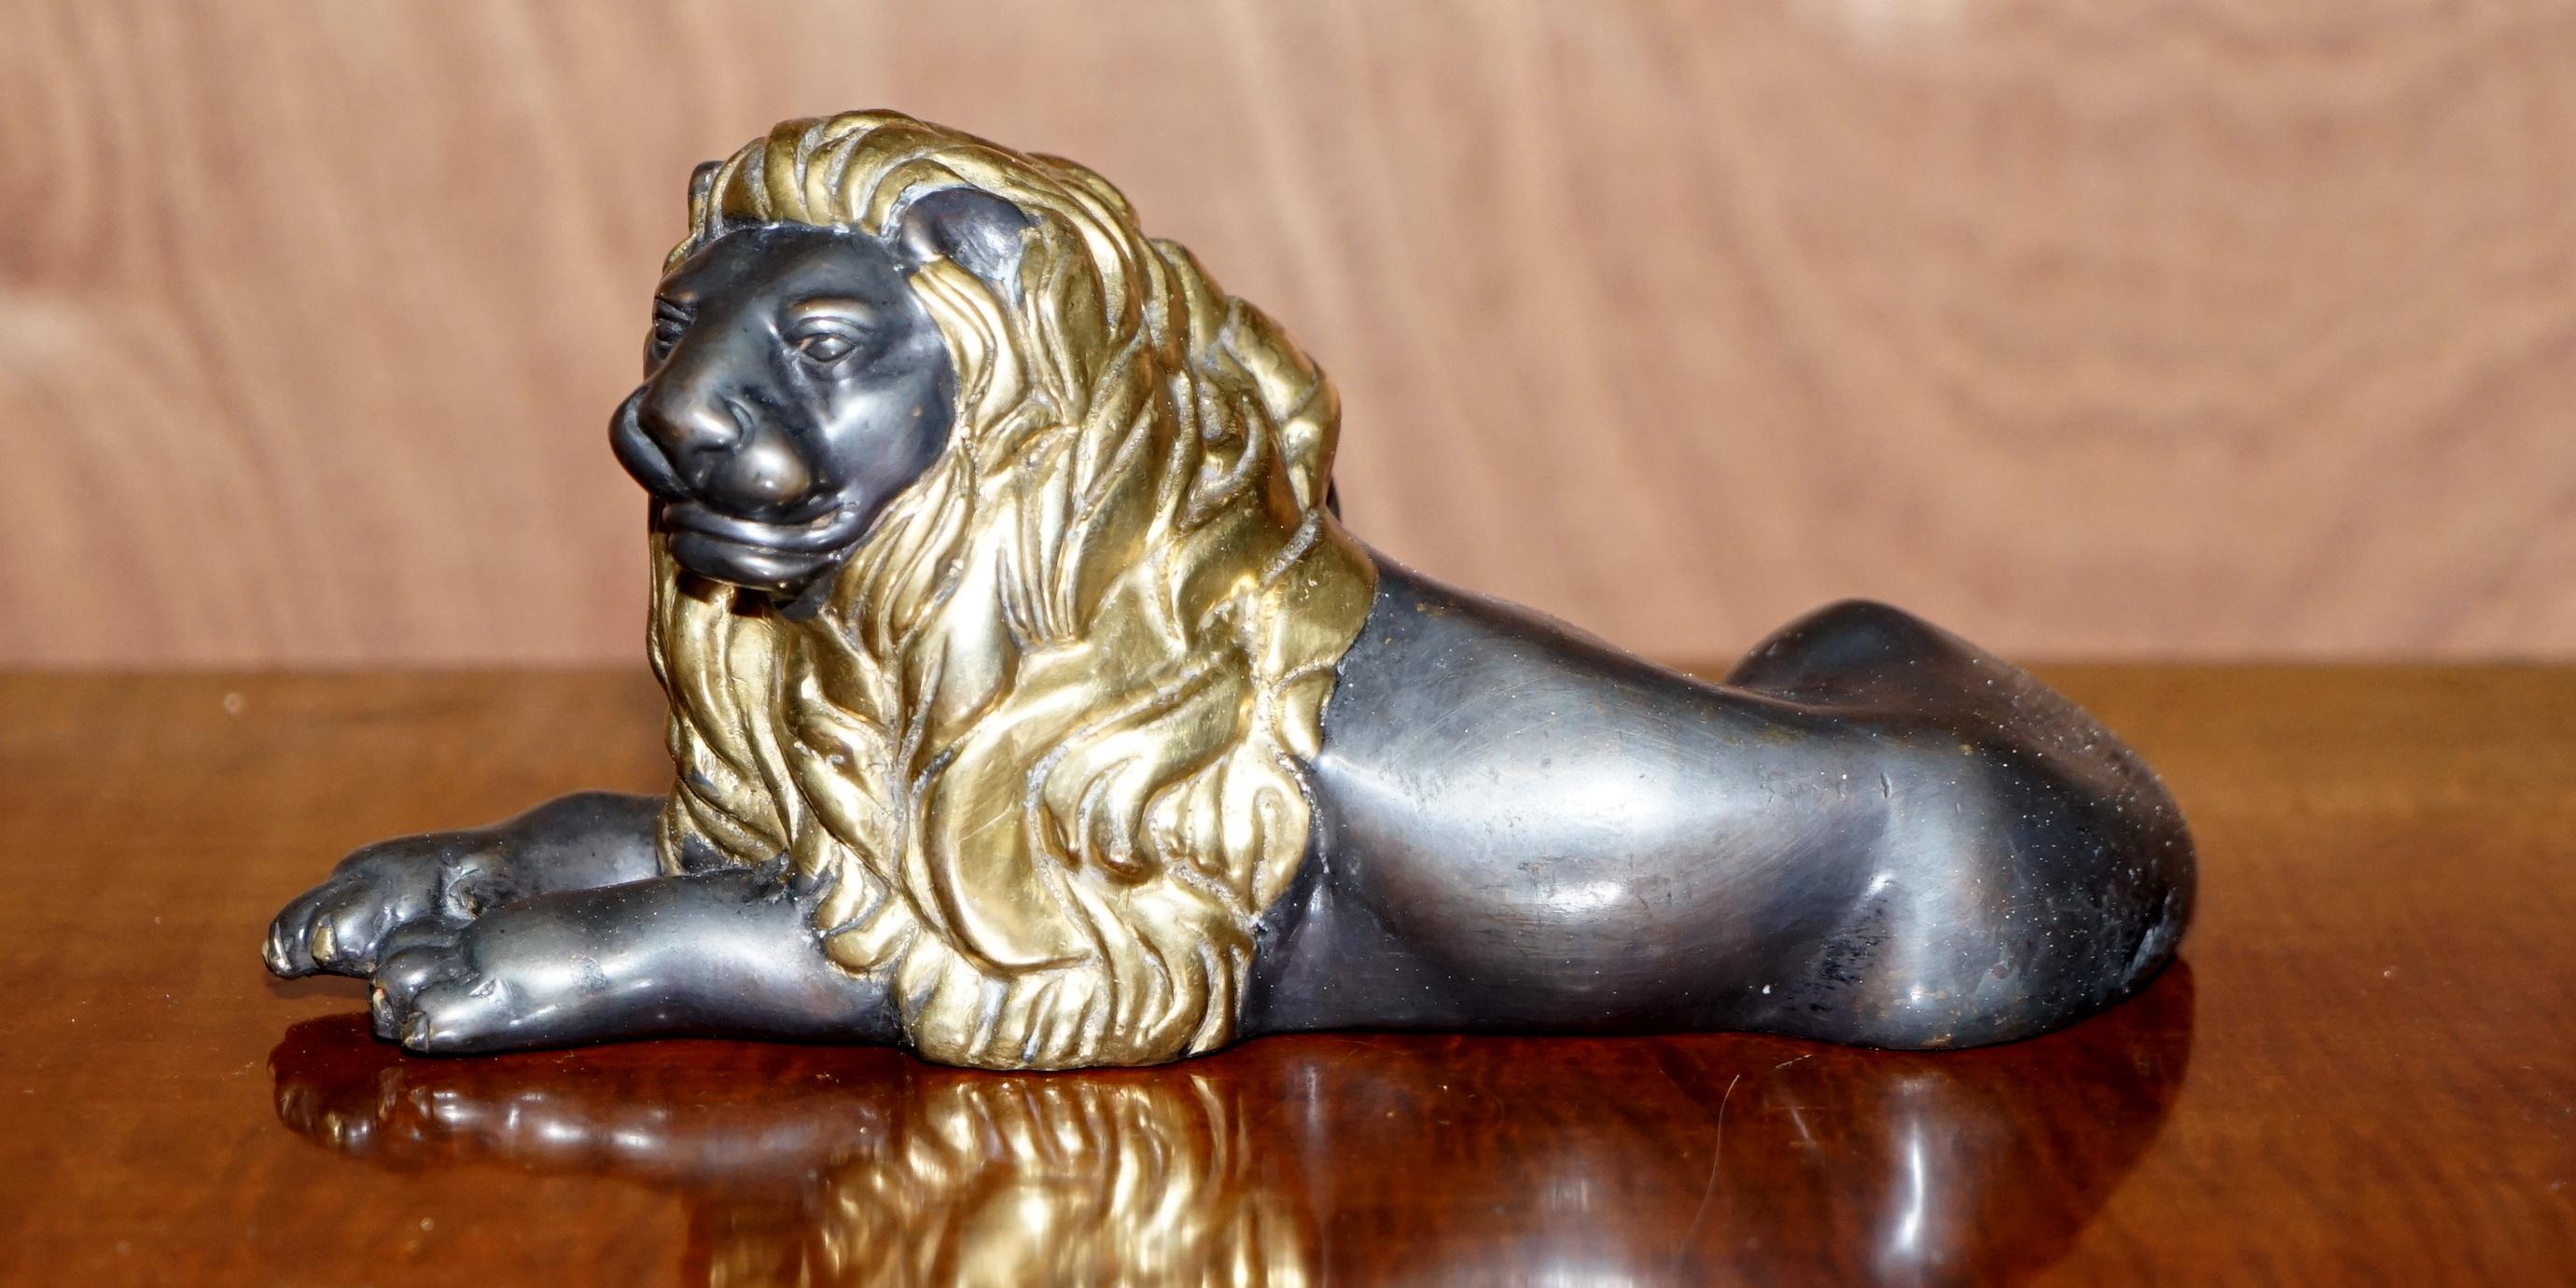 Wir freuen uns sehr, diesen atemberaubenden italienischen Grand Tour Recumbent Lion aus dem späten 19. 

Ein sehr gut aussehendes und dekoratives Stück, das in jeder Umgebung teuer und wichtig aussieht

Diese Stücke wurden von jungen